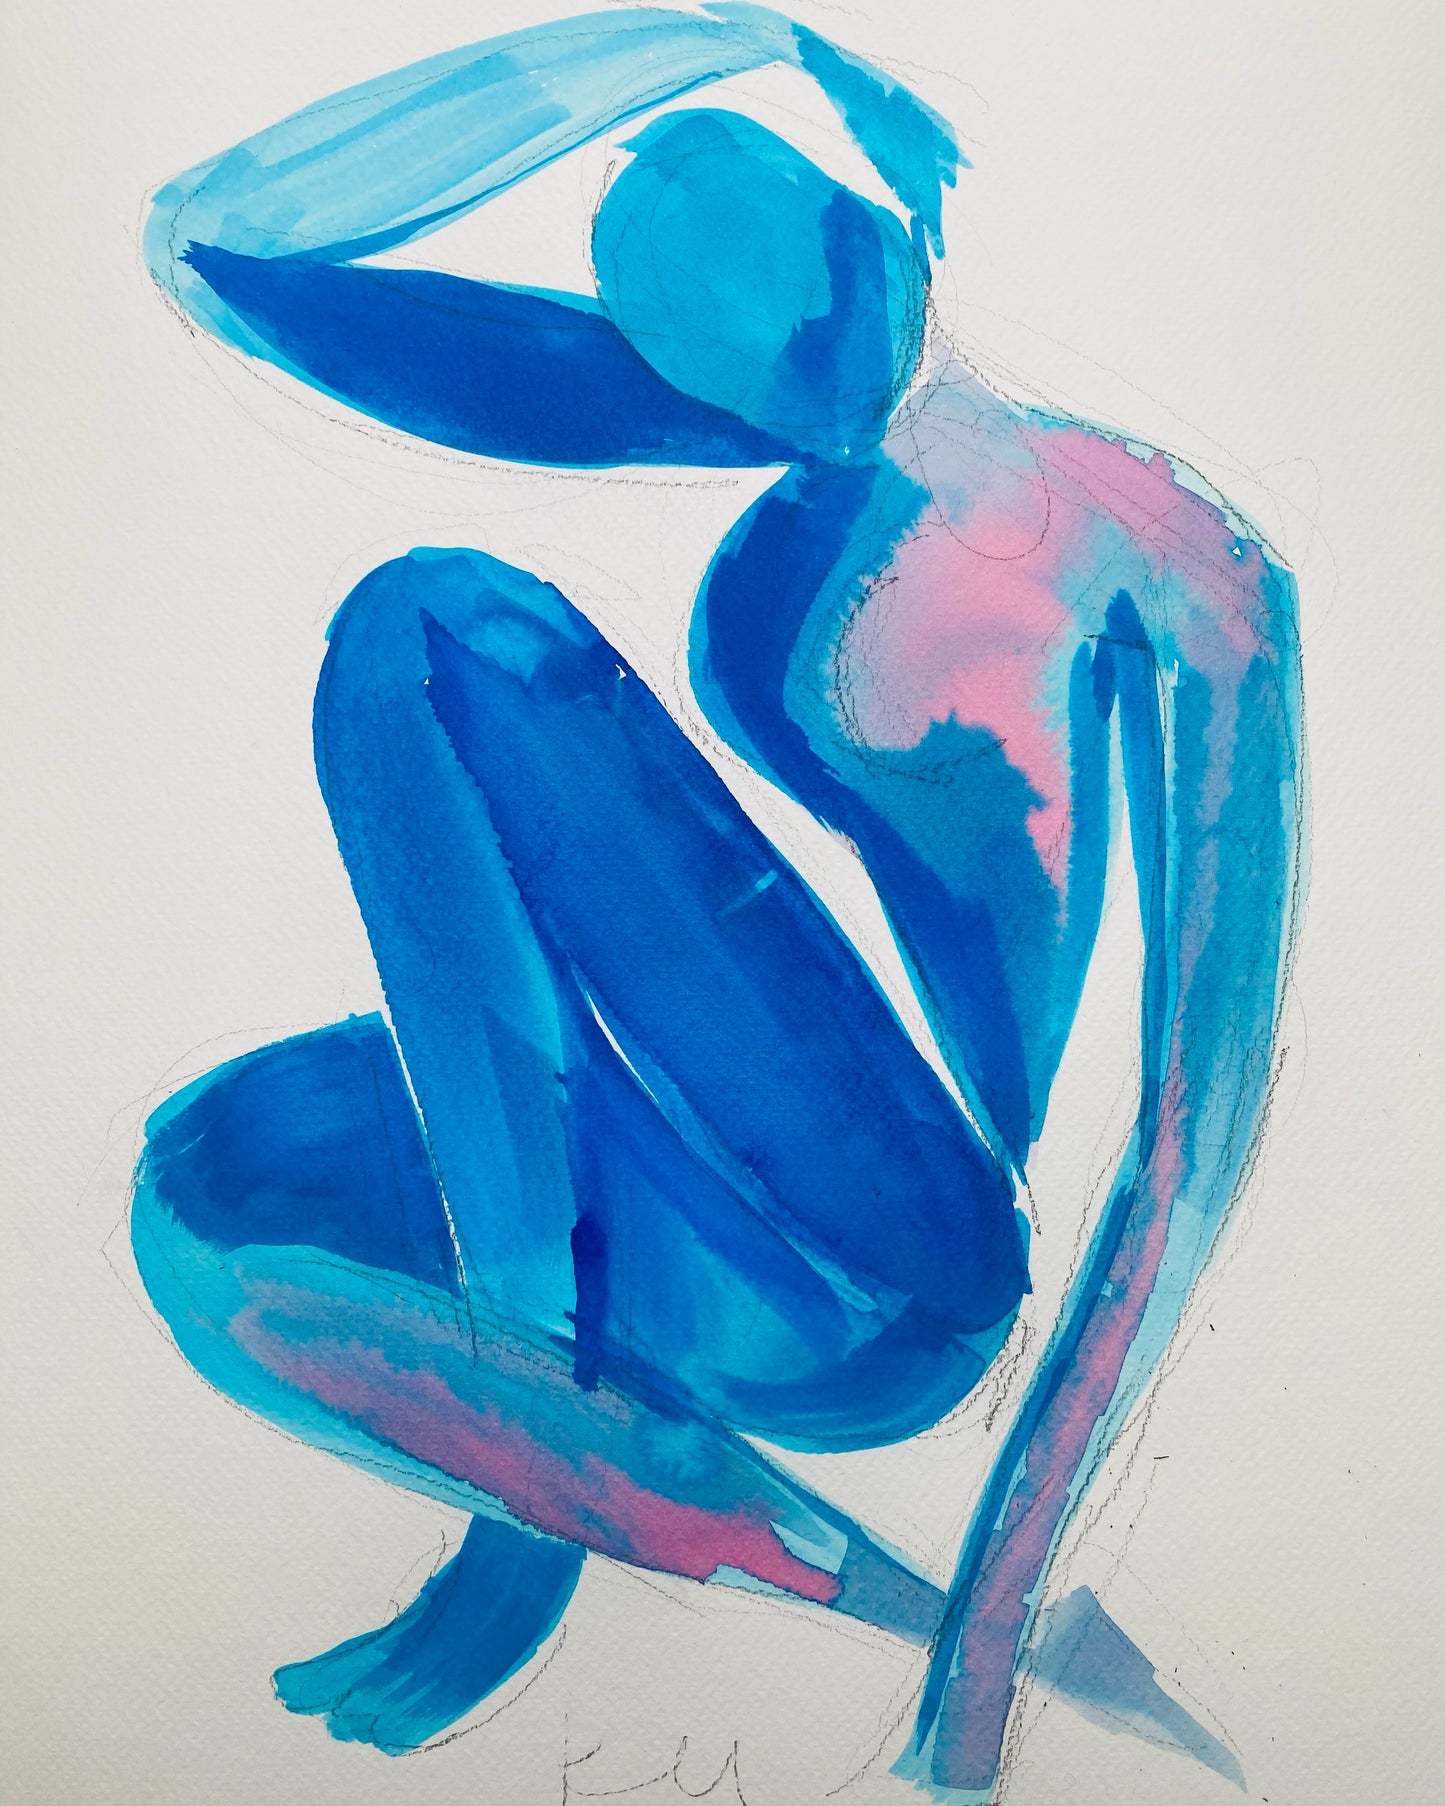 Blue nude